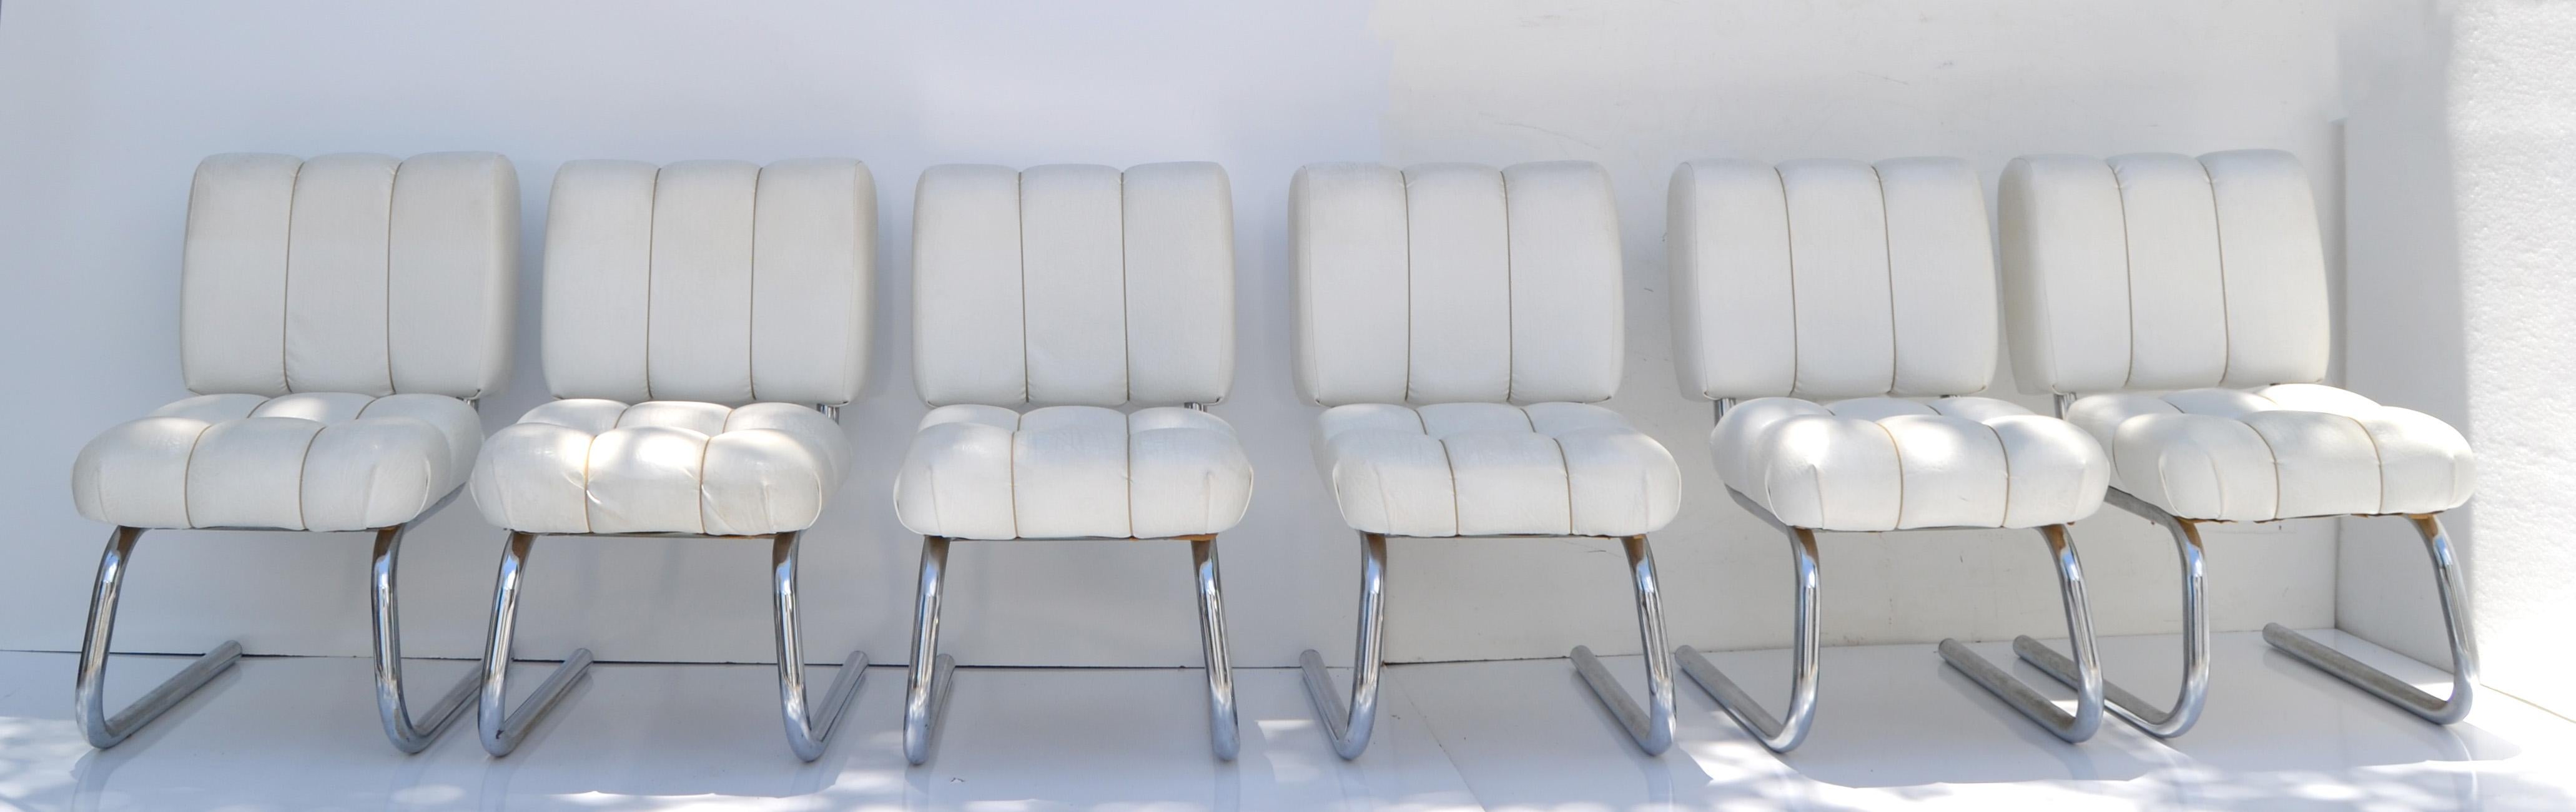 Superbe ensemble de 6 chaises de salle à manger cantilever tubulaires américaines en chrome, vinyle et corde fabriquées par B. Brody Seating Company dans les années 1970.
Rembourrage très détaillé avec des carrés de cordes sur les sièges et le